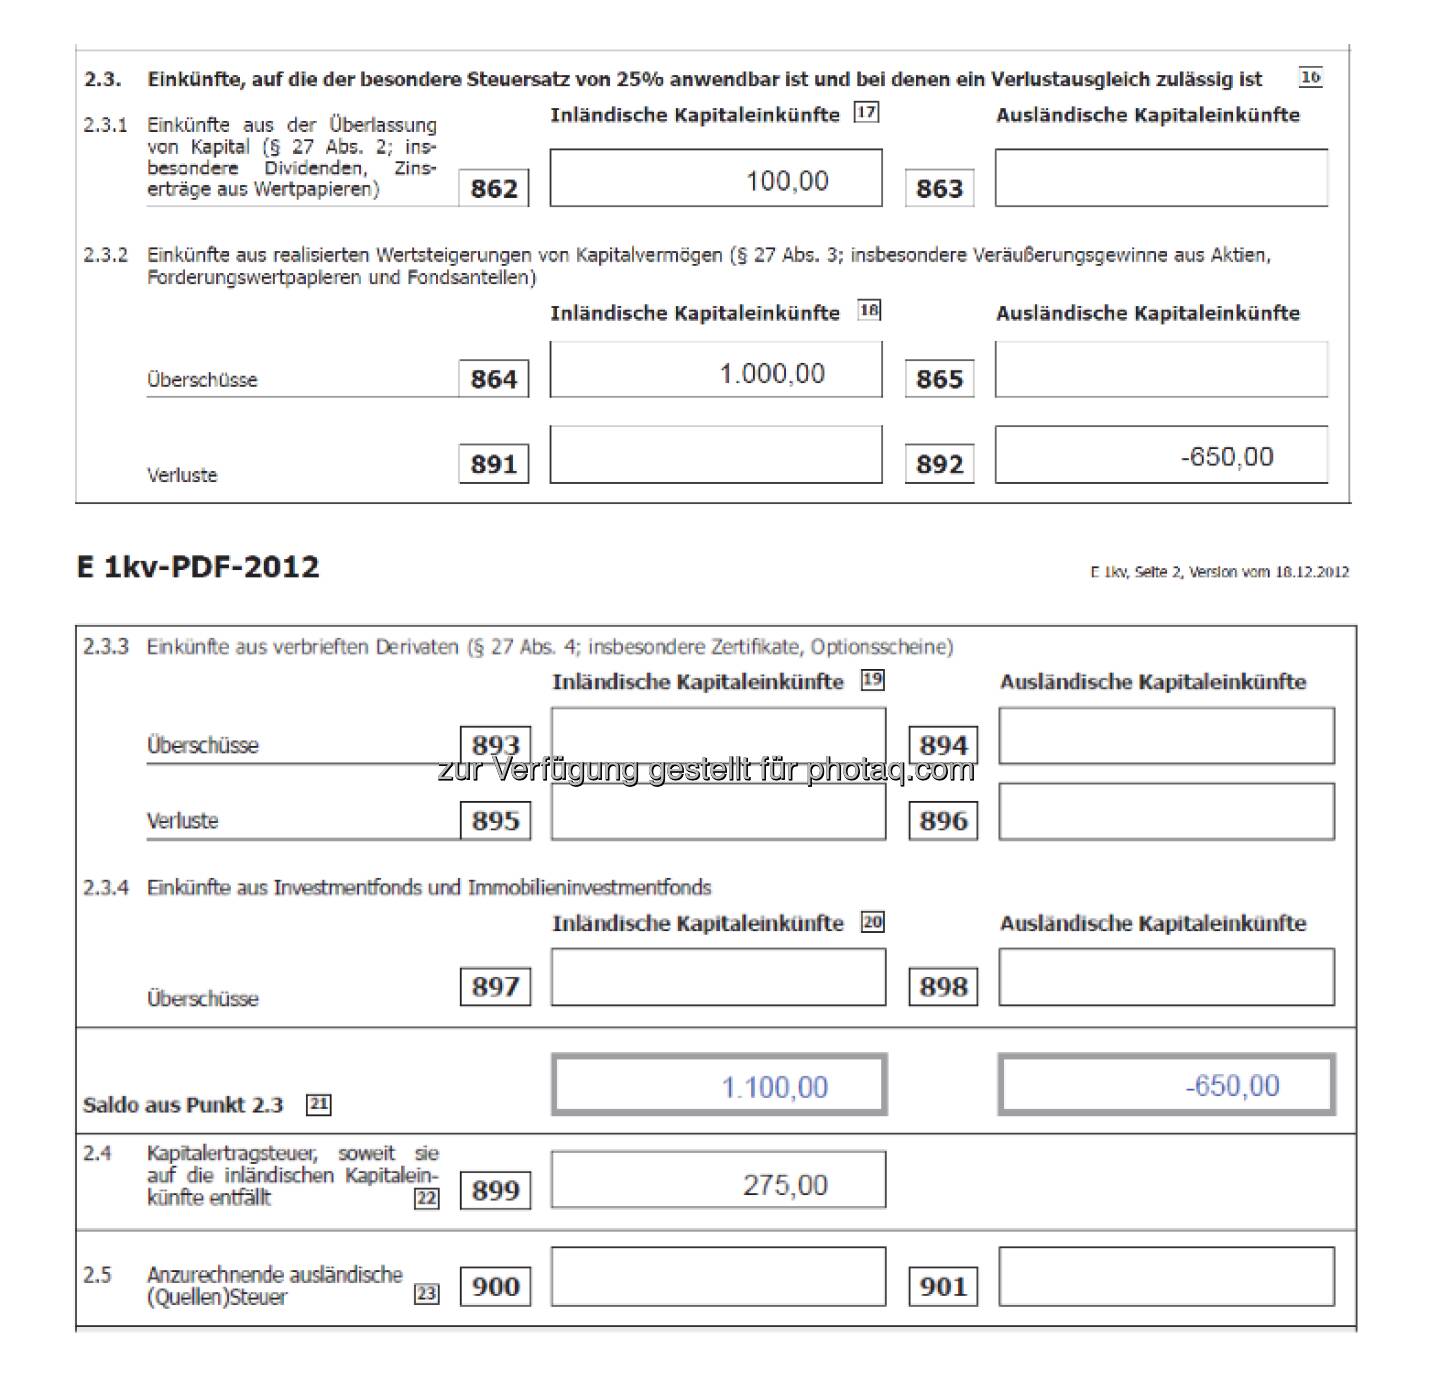 Deloitte: Das Steuerformal E1 kv-2012 anhand eines Bespiels, siehe http://www.christian-drastil.com/2013/03/31/drastil-fragt-privatpersonen-und-kapitalvermogen-wie-funktioniert-das-neue-steuerformular-e1-kv-2012/